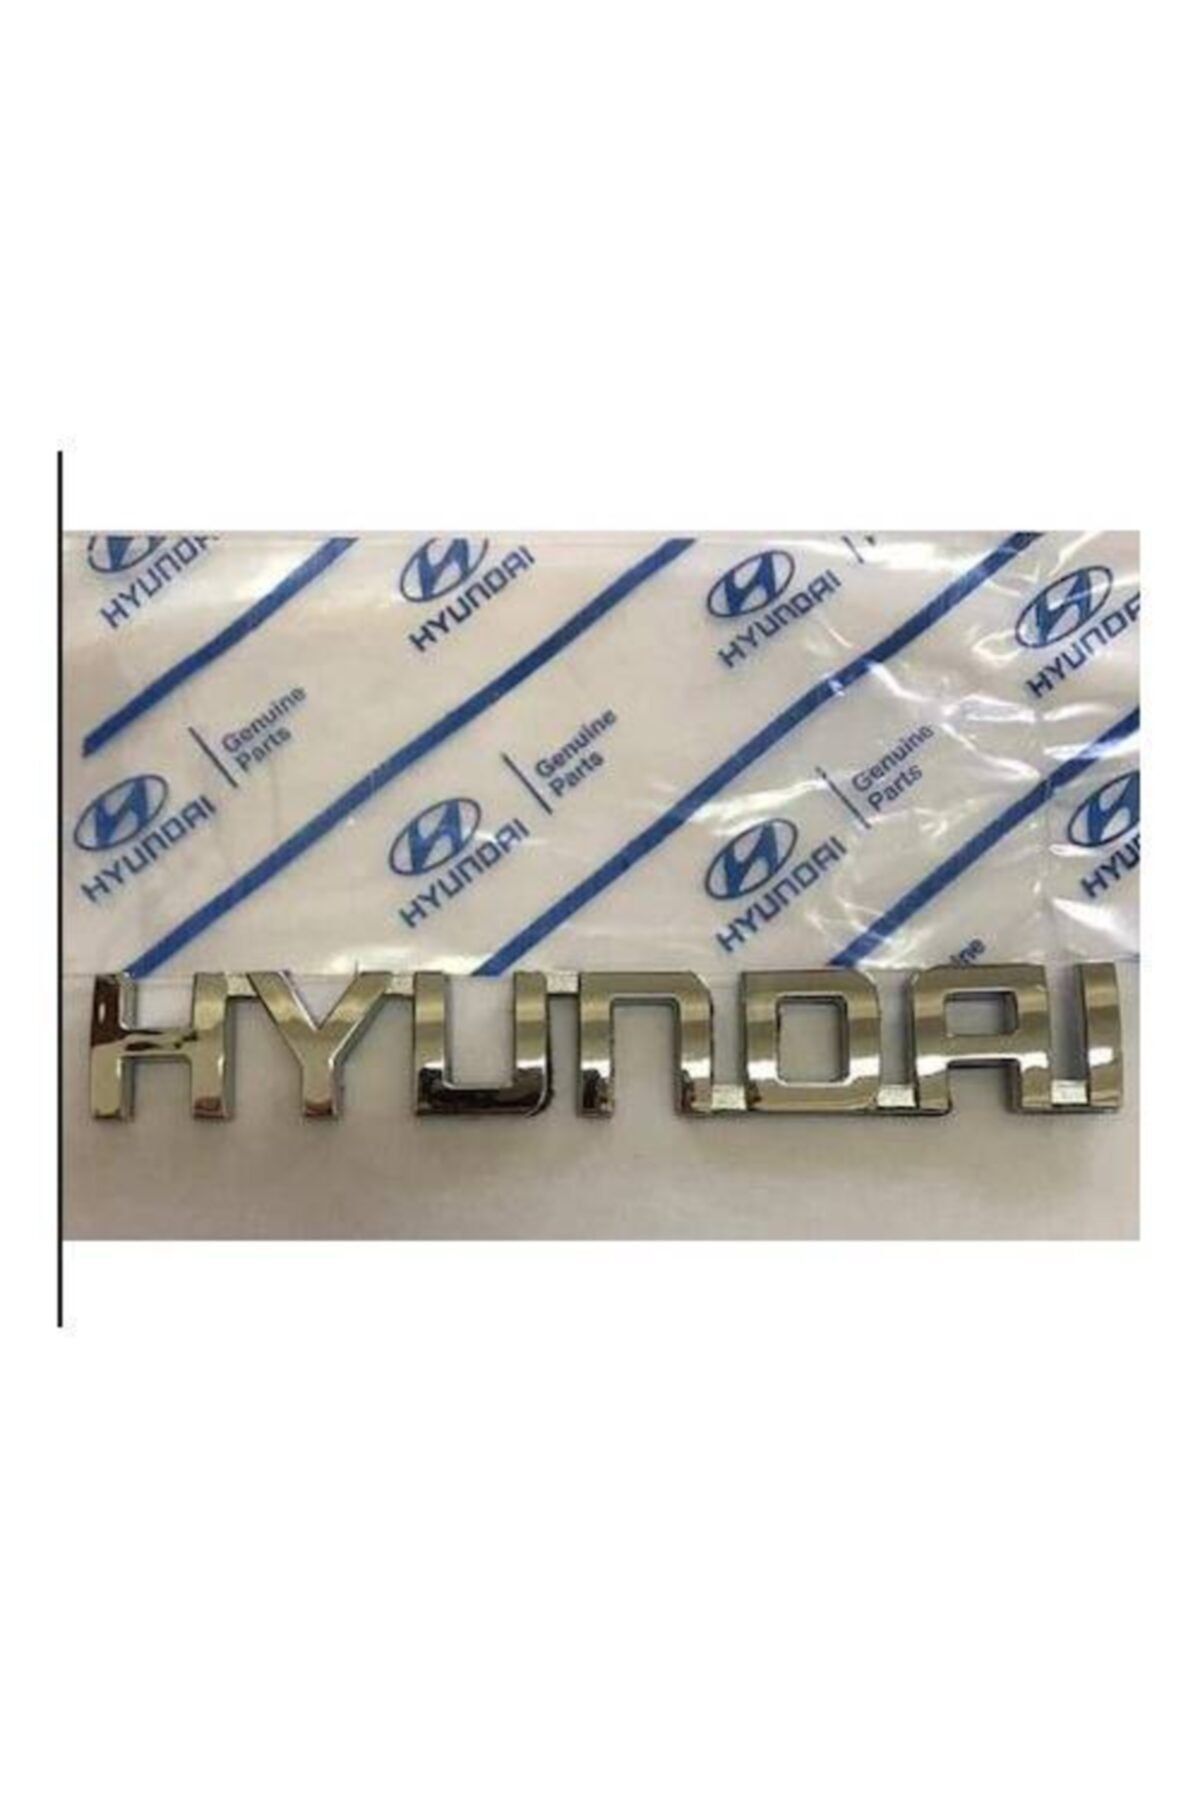 Genel Markalar Hyundai Bagaj Yazısı (getz Kasa)-1.5 Cm X 10 Cm-küçük Boy-yüksek Kalite-